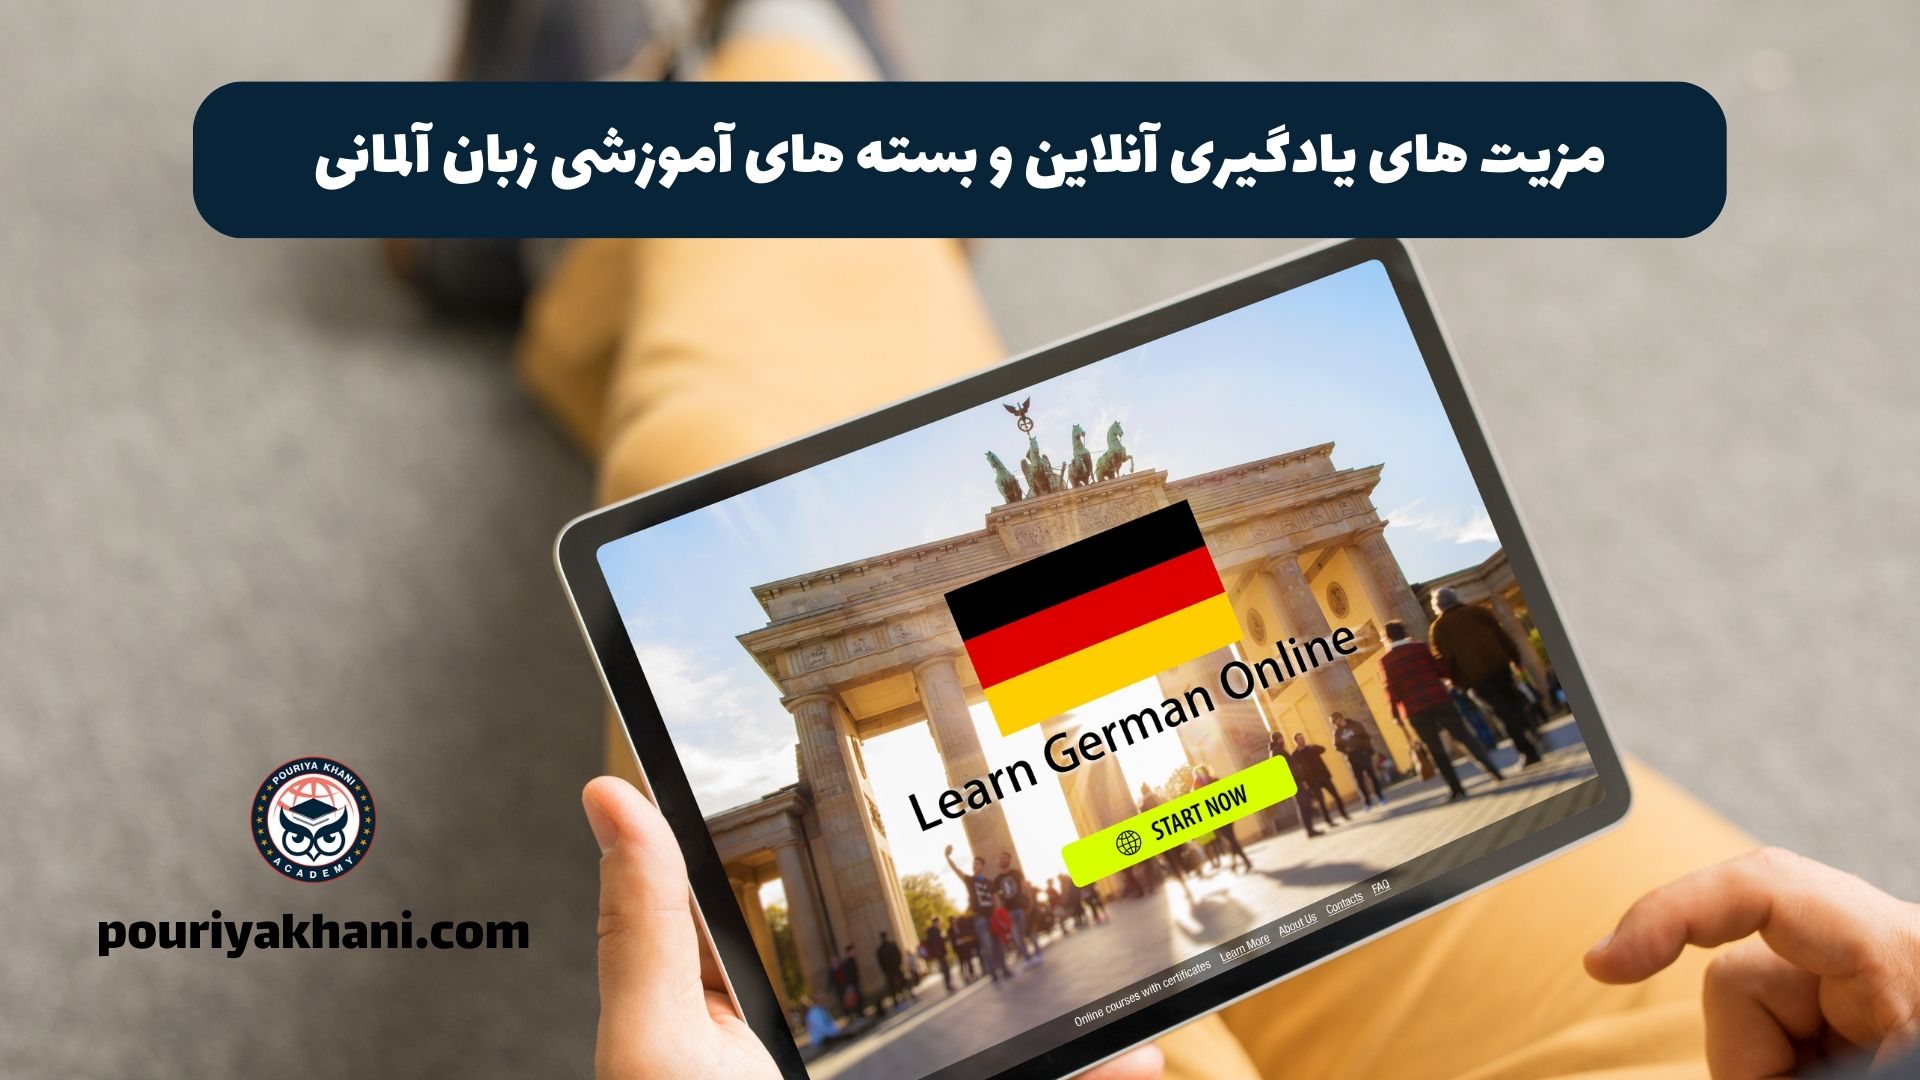 مزیت های یادگیری آنلاین و بسته های آموزشی زبان آلمانی